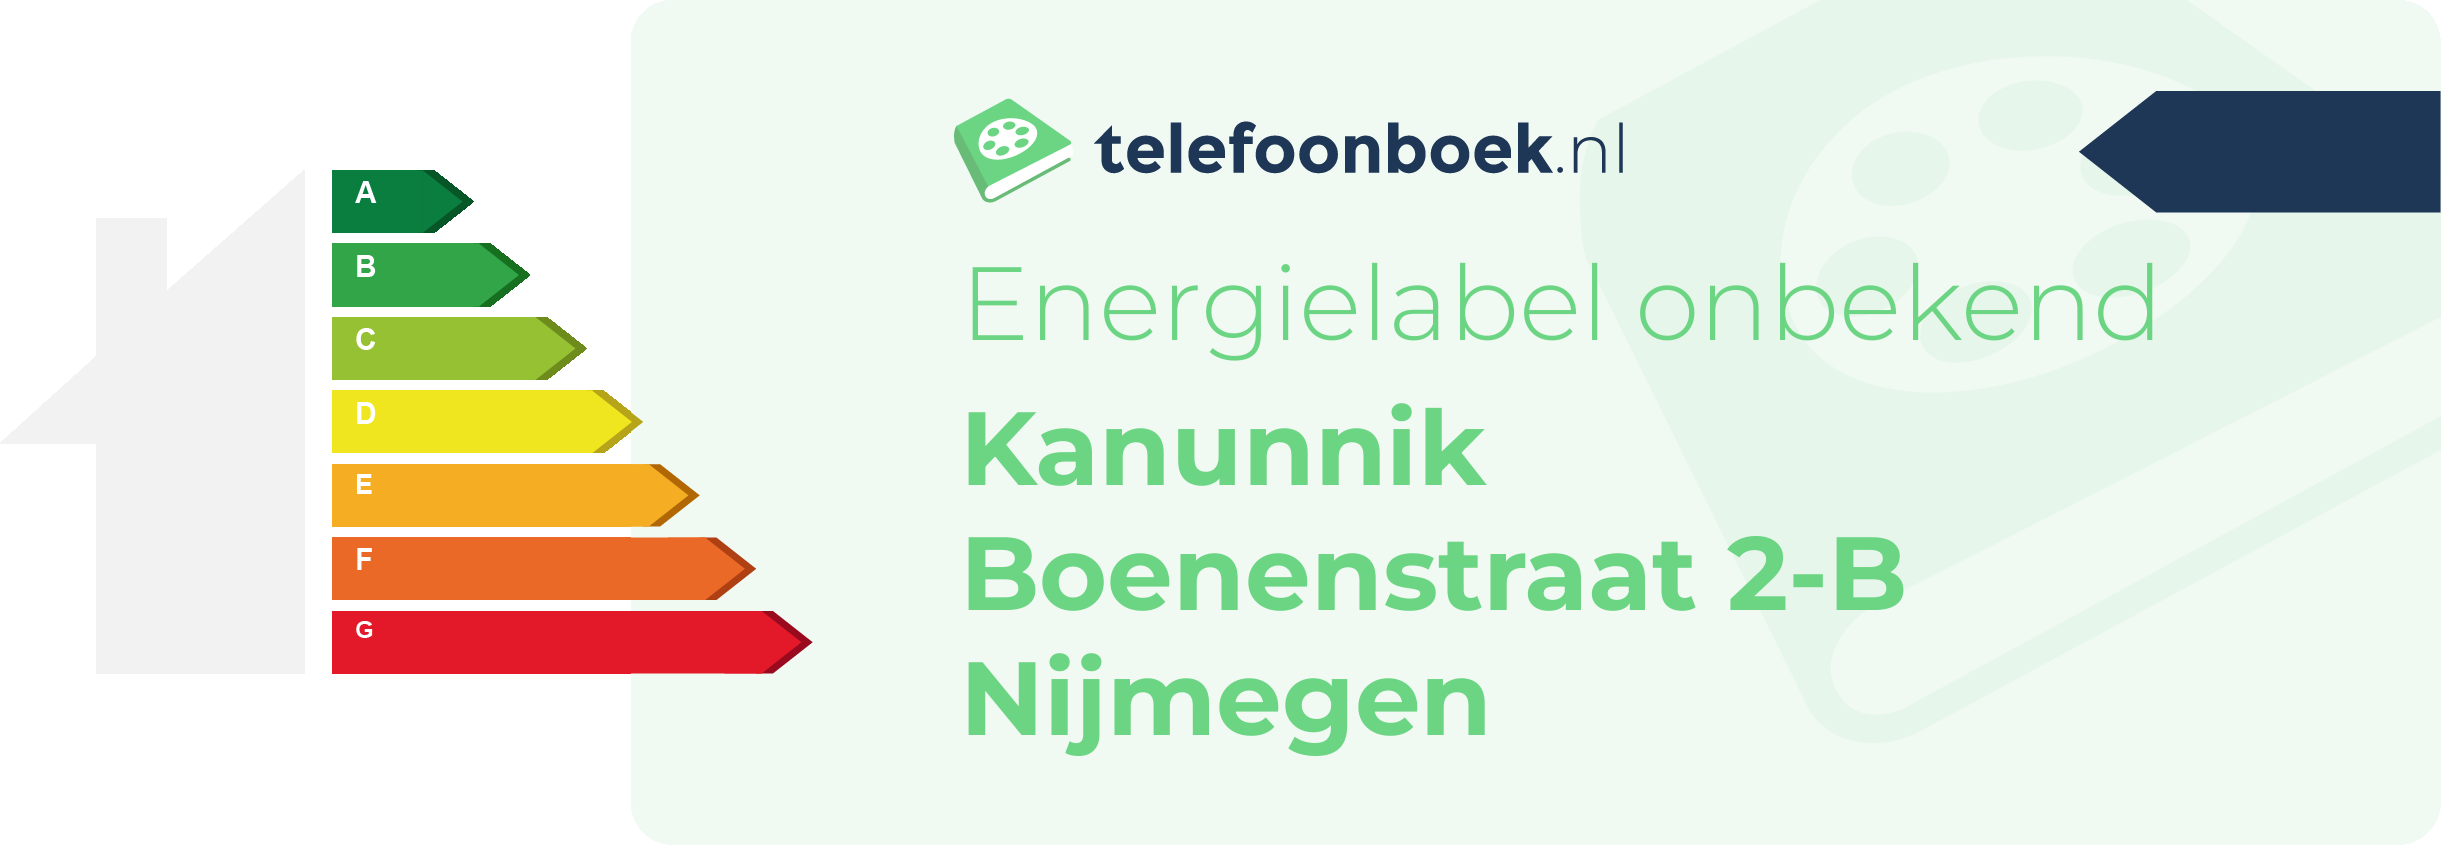 Energielabel Kanunnik Boenenstraat 2-B Nijmegen